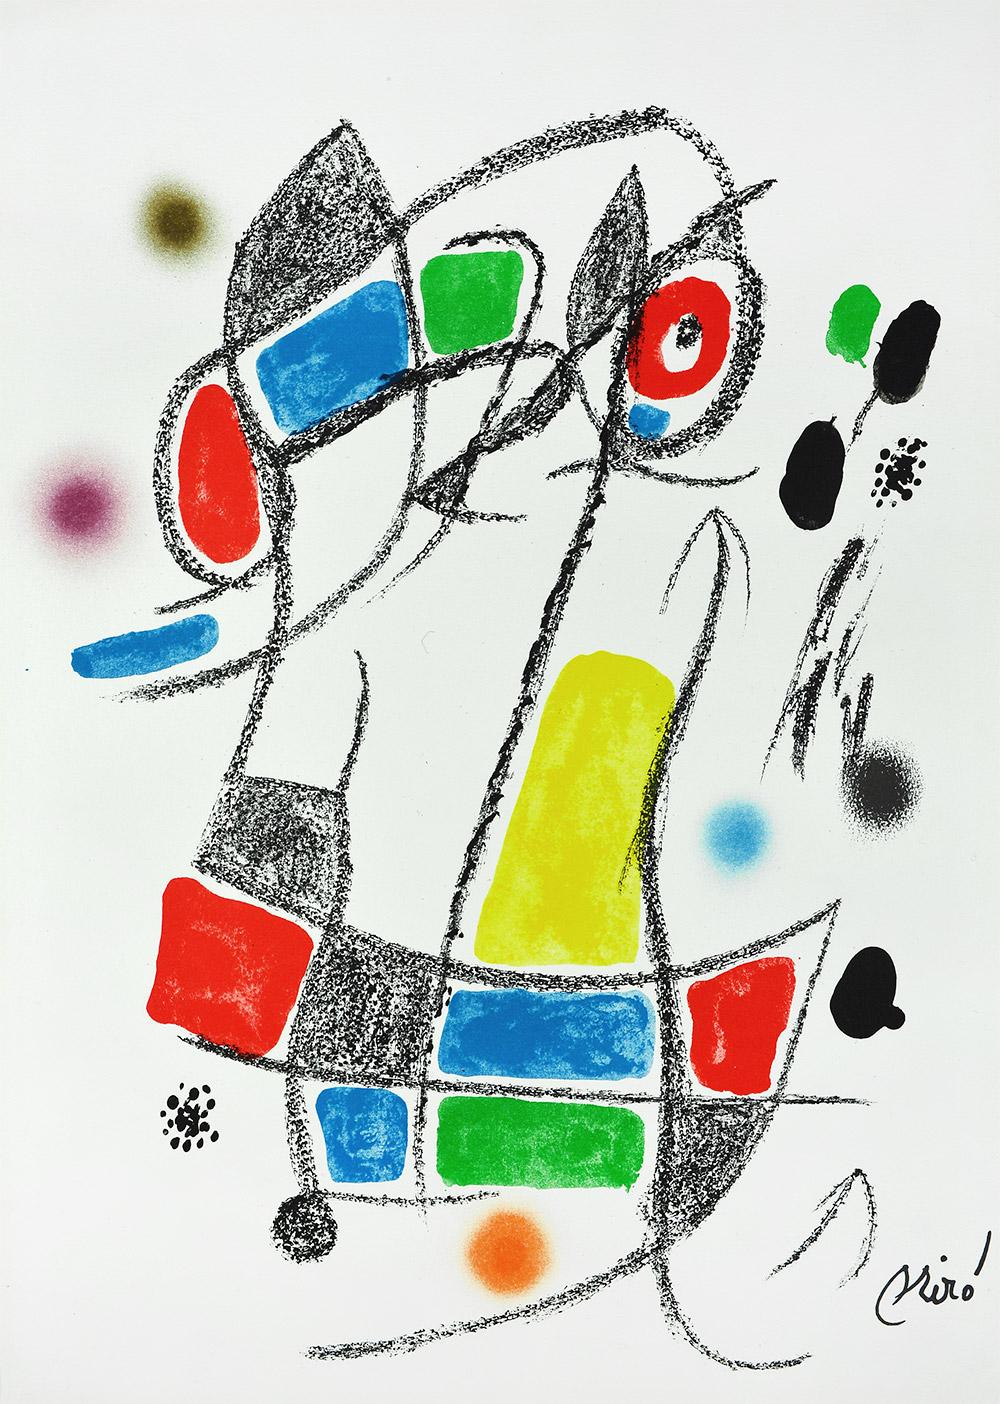 Joan Miró Abstract Print - JOAN MIRÓ Maravillas con variaciones acrósticas en el jardín... 8 Lithographs